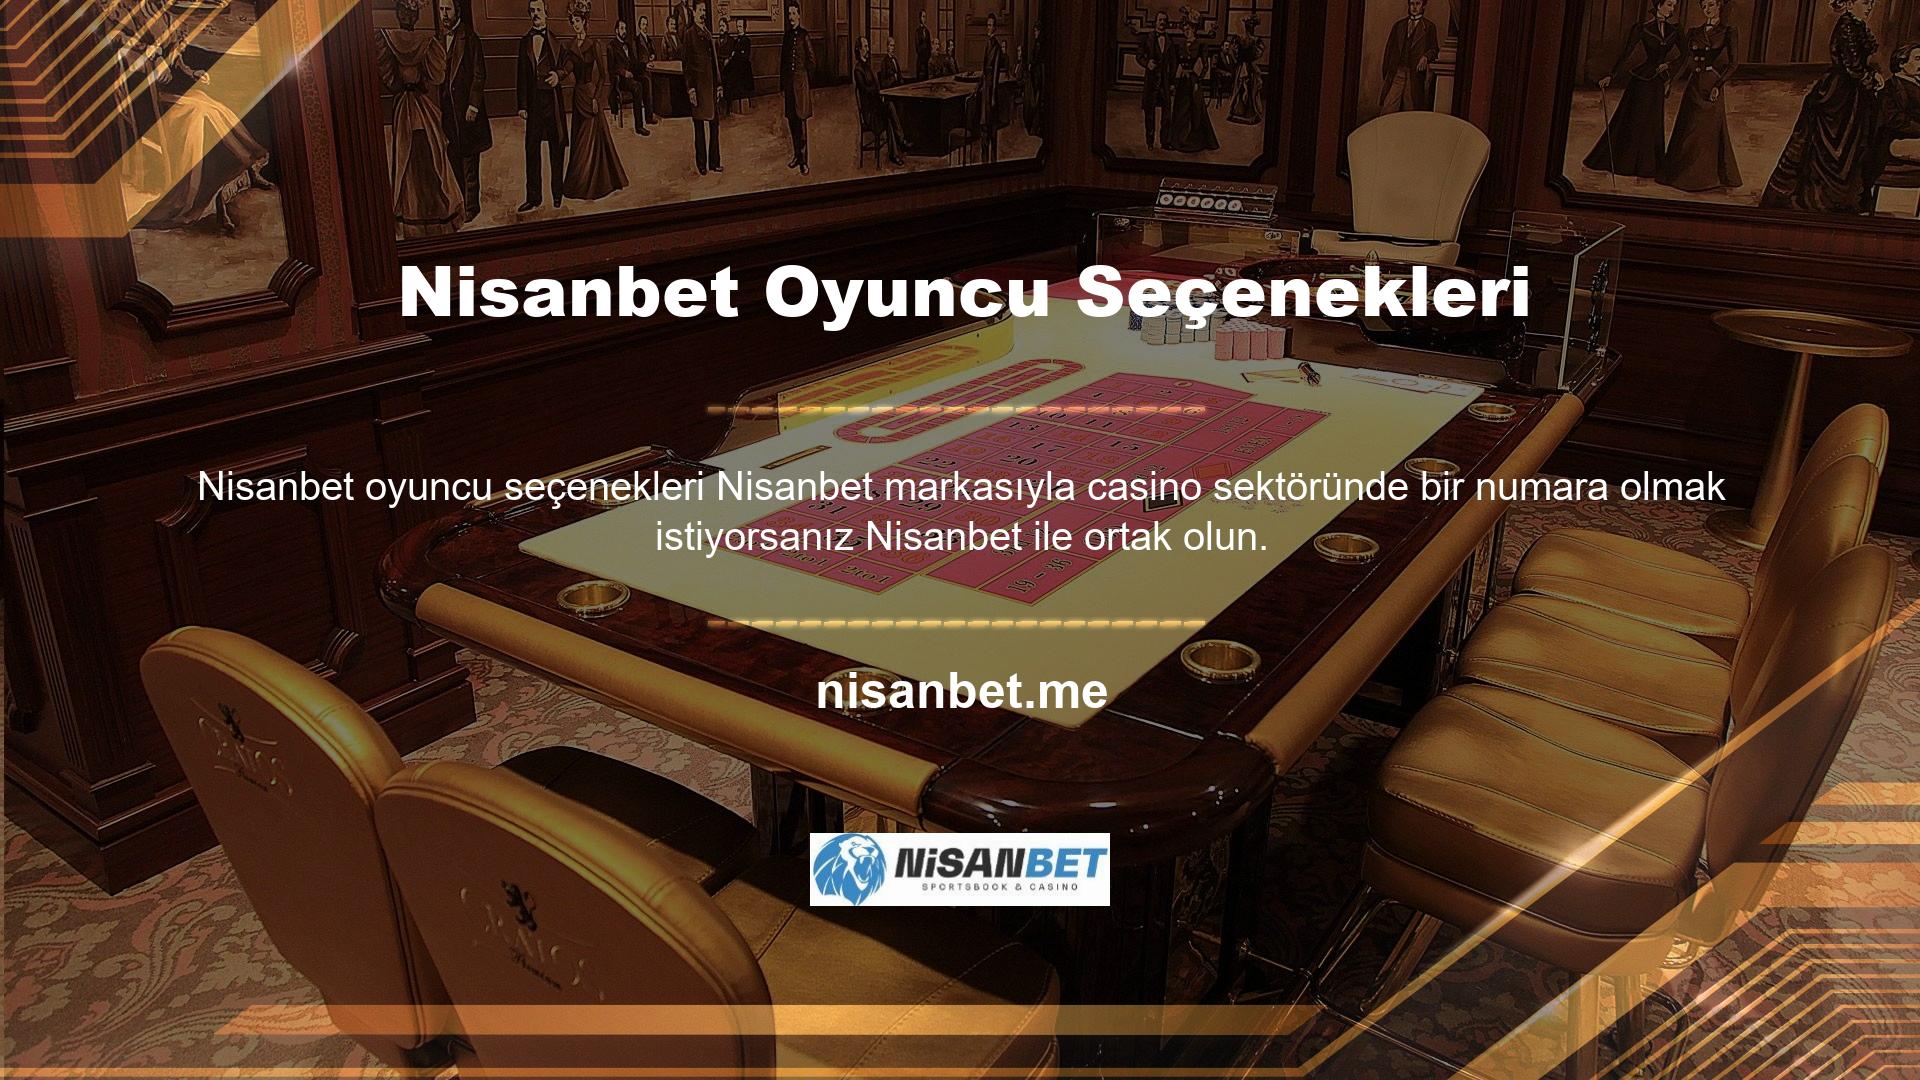 Nisanbet markasıyla casino sektöründe bir numara olmak istiyorsanız Nisanbet ile ortak olun